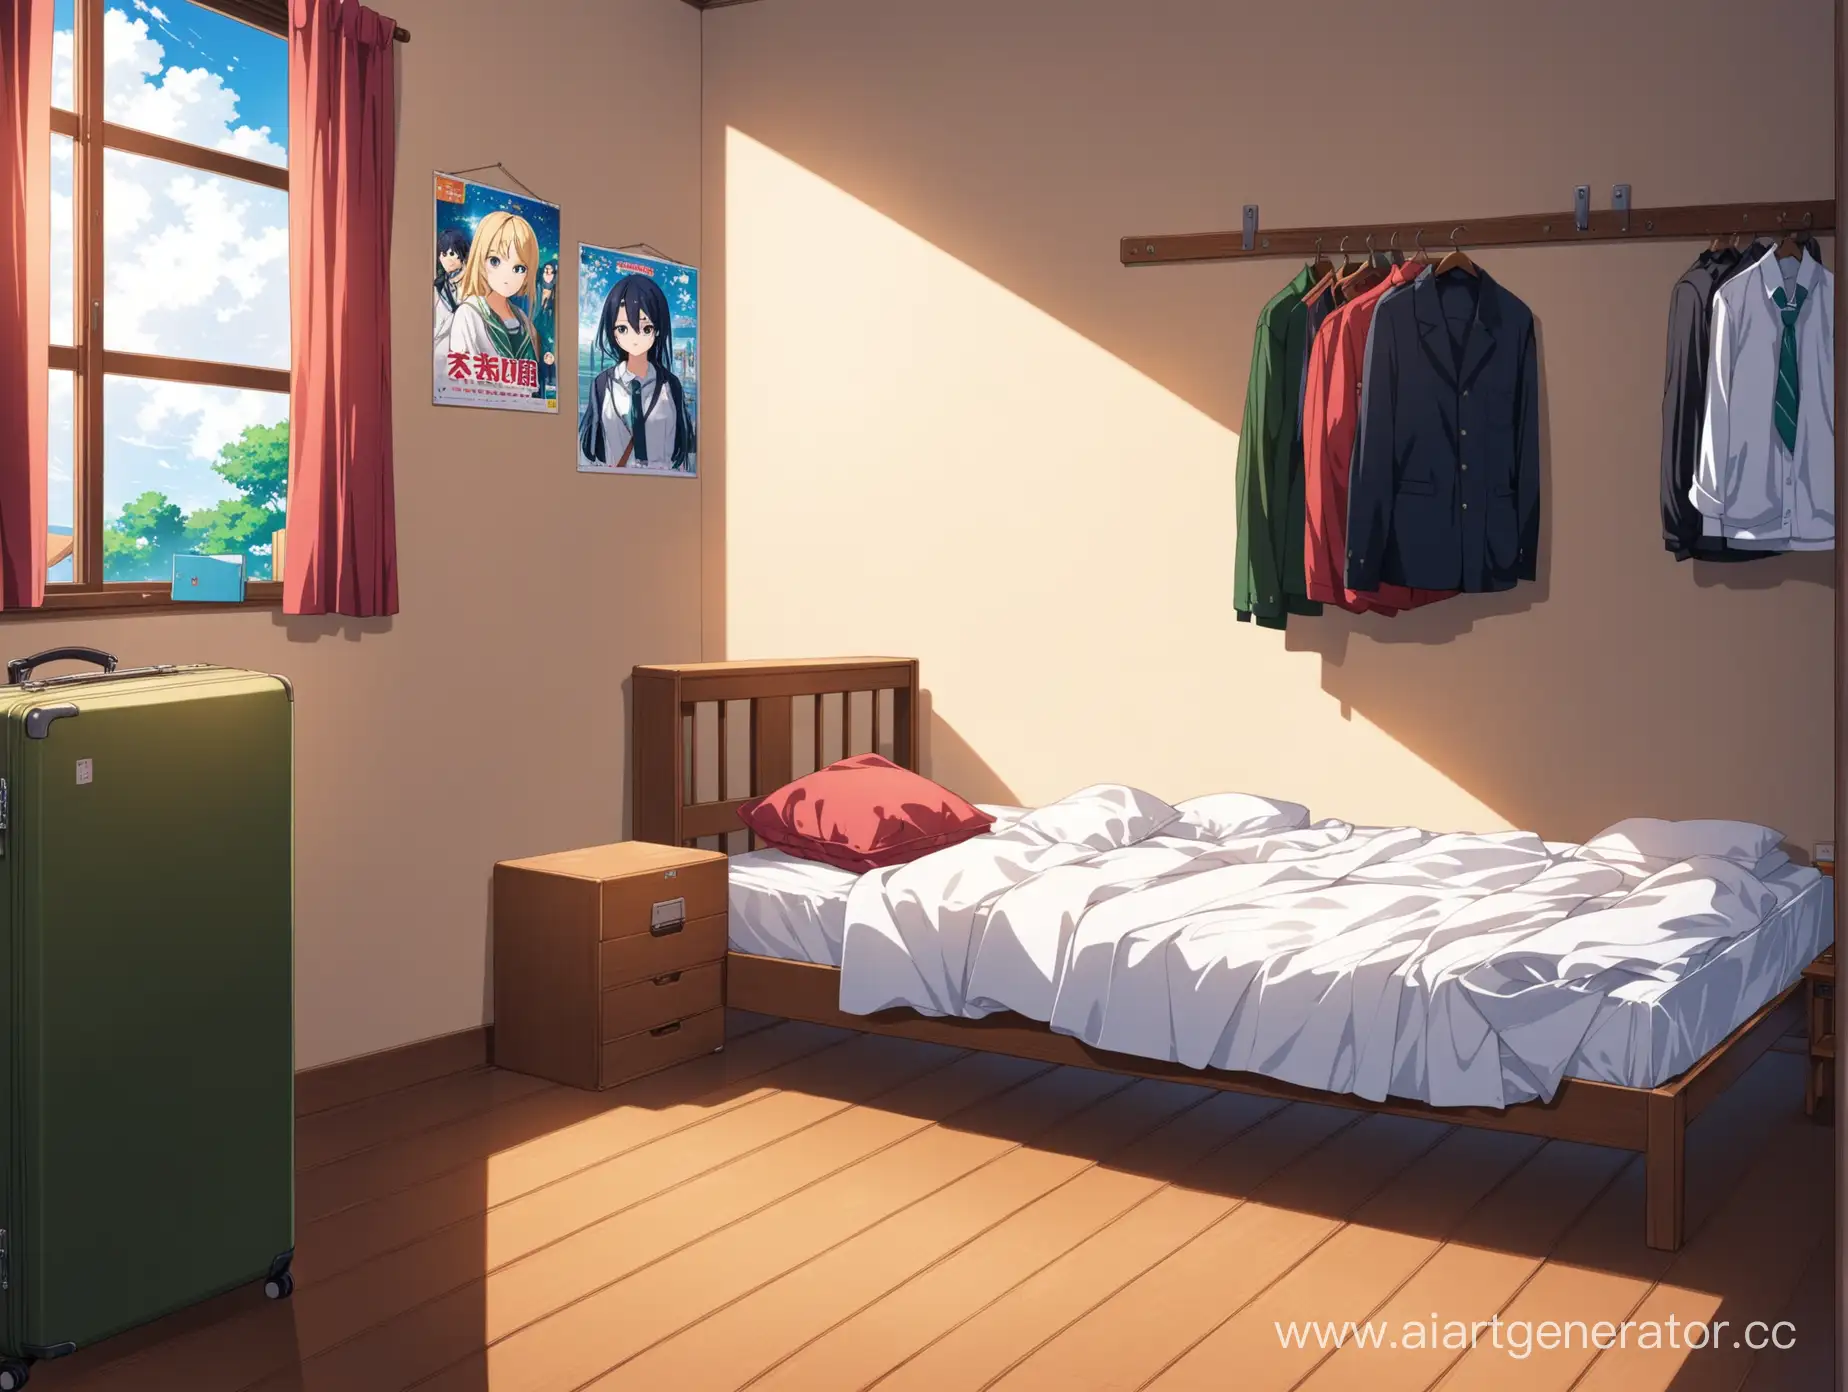 Комната школьника. На стенах висят аниме-плакаты. кровать не отправлена. на стуле висит одежда. у кровати стоит собранный чемодан
